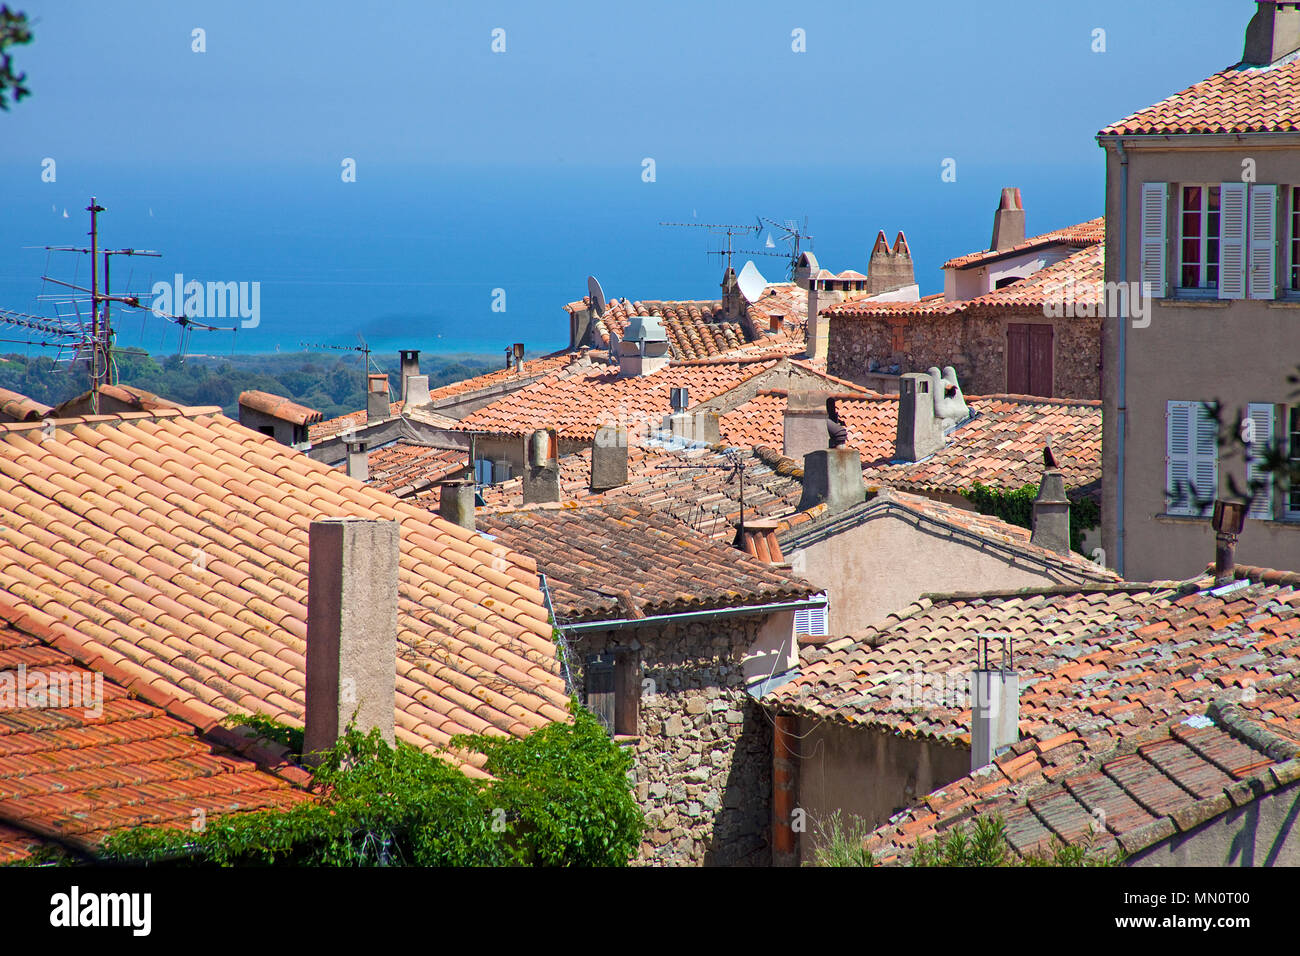 Houses at village Ramatuelle, Cote d'Azur, Département Var, Provence-Alpes-Côte d’Azur, South France, France, Europe Stock Photo